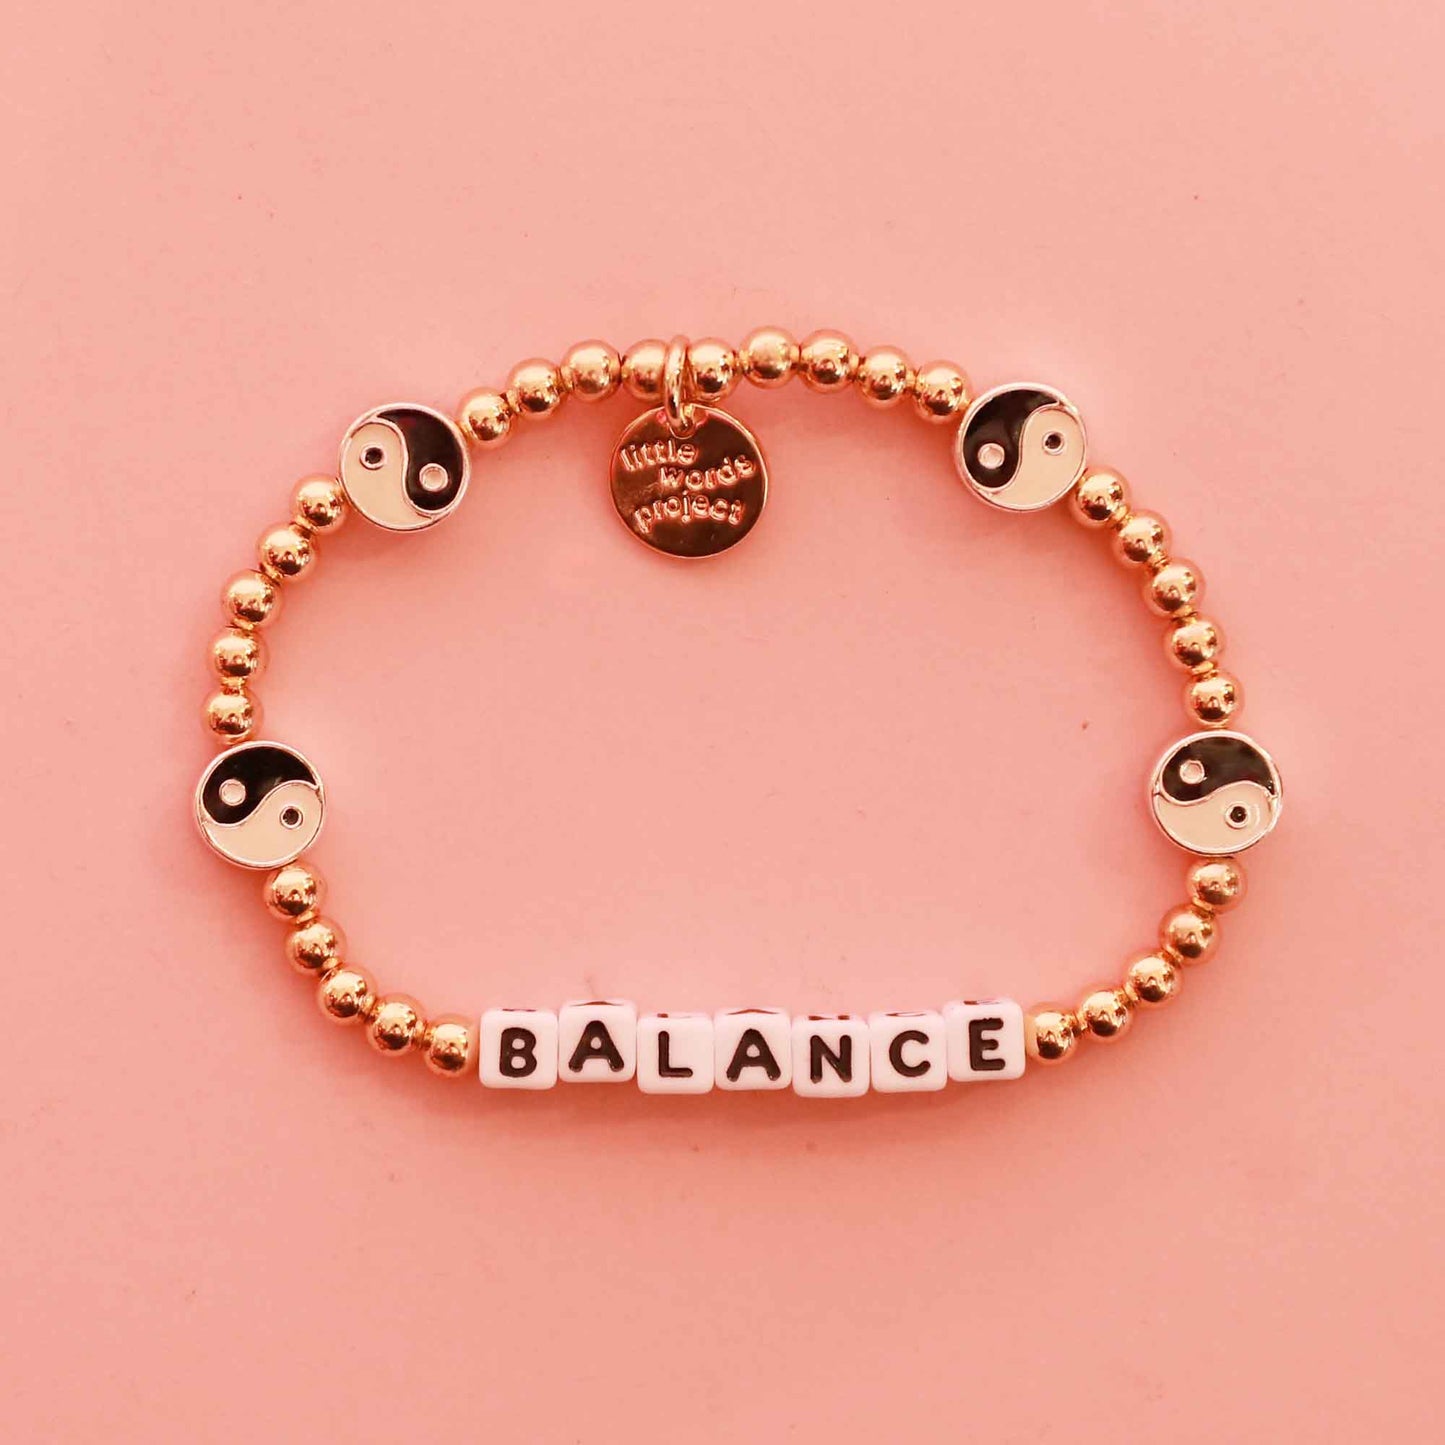 Little Words Project® "Balance" Bracelet